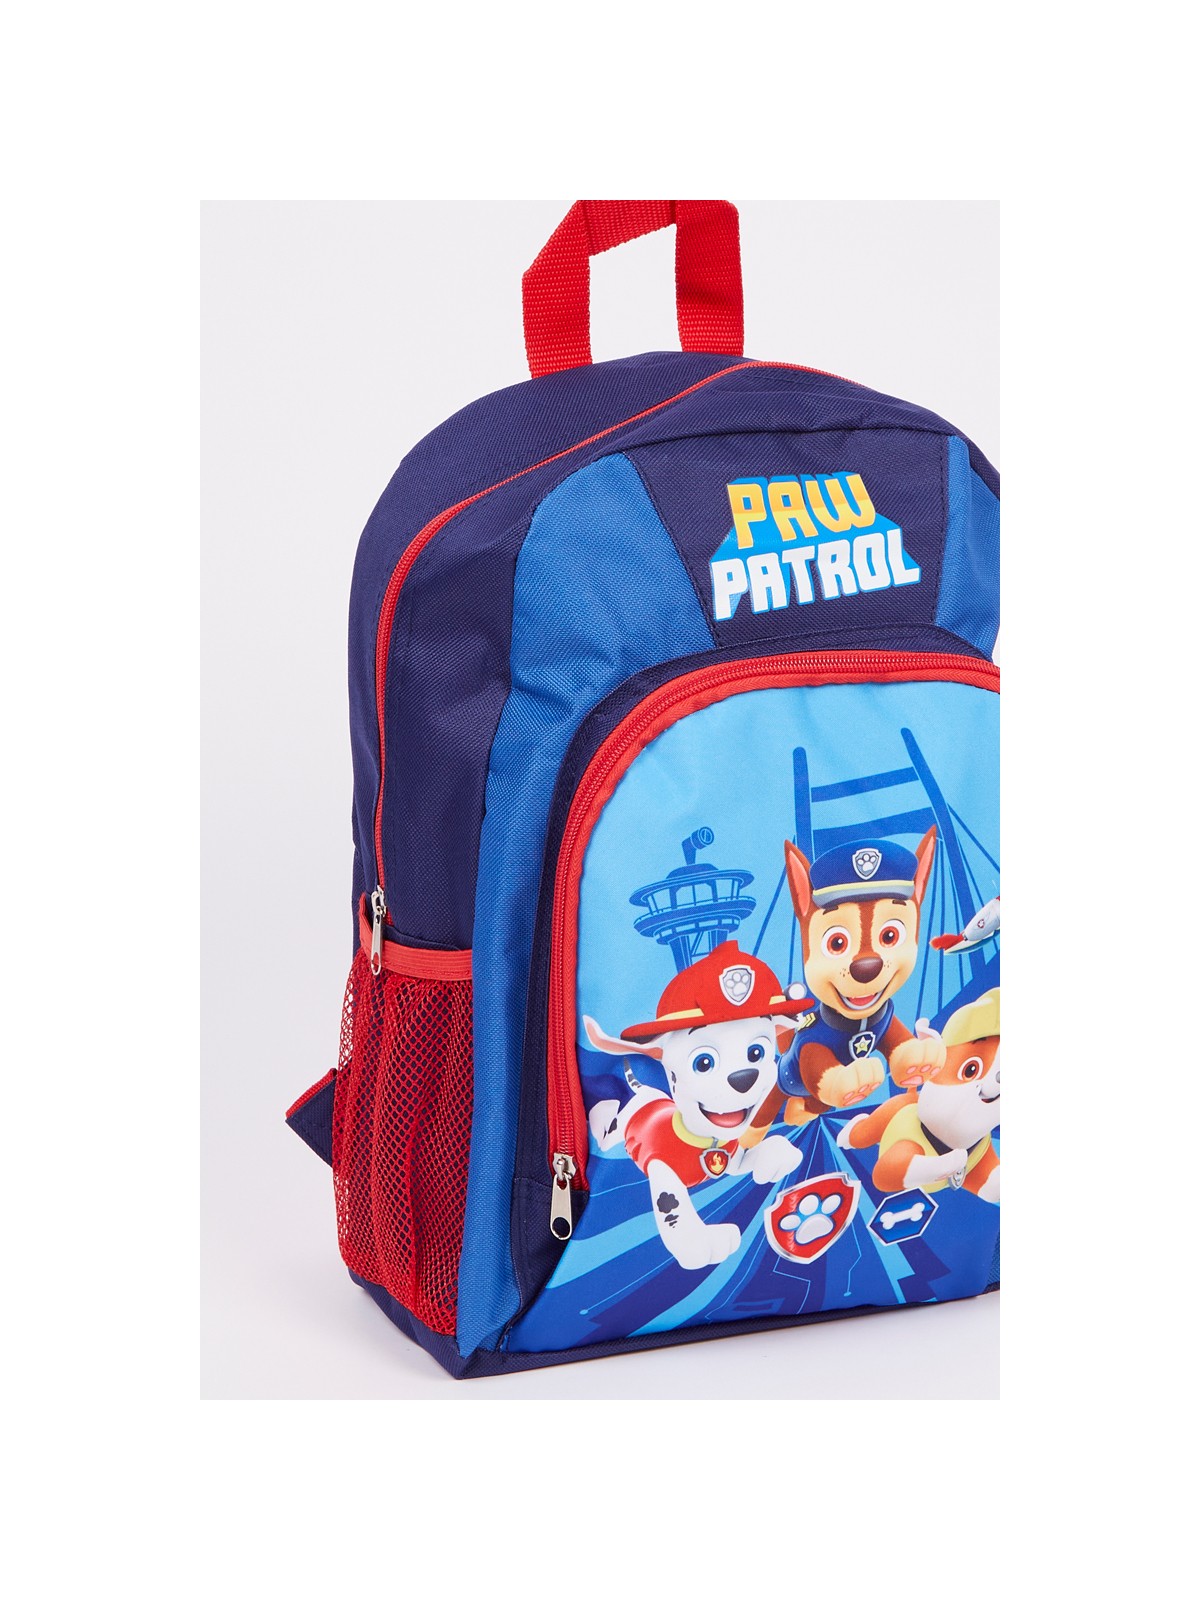 Paw Patrol Backpack